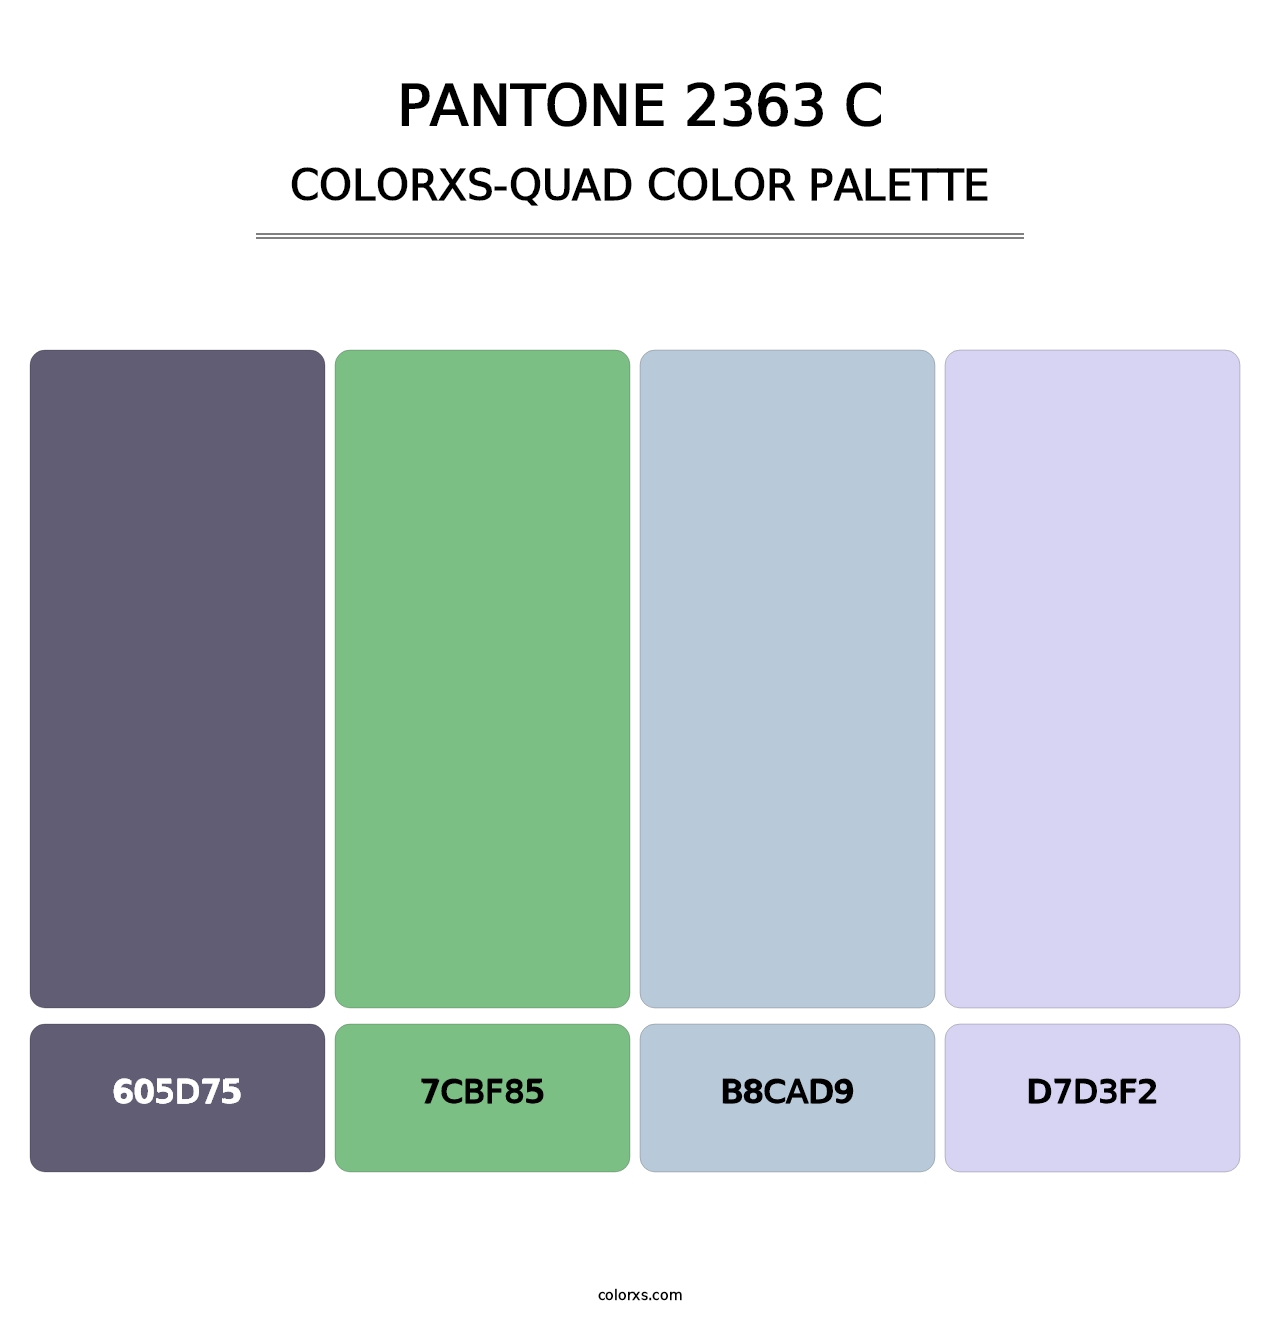 PANTONE 2363 C - Colorxs Quad Palette